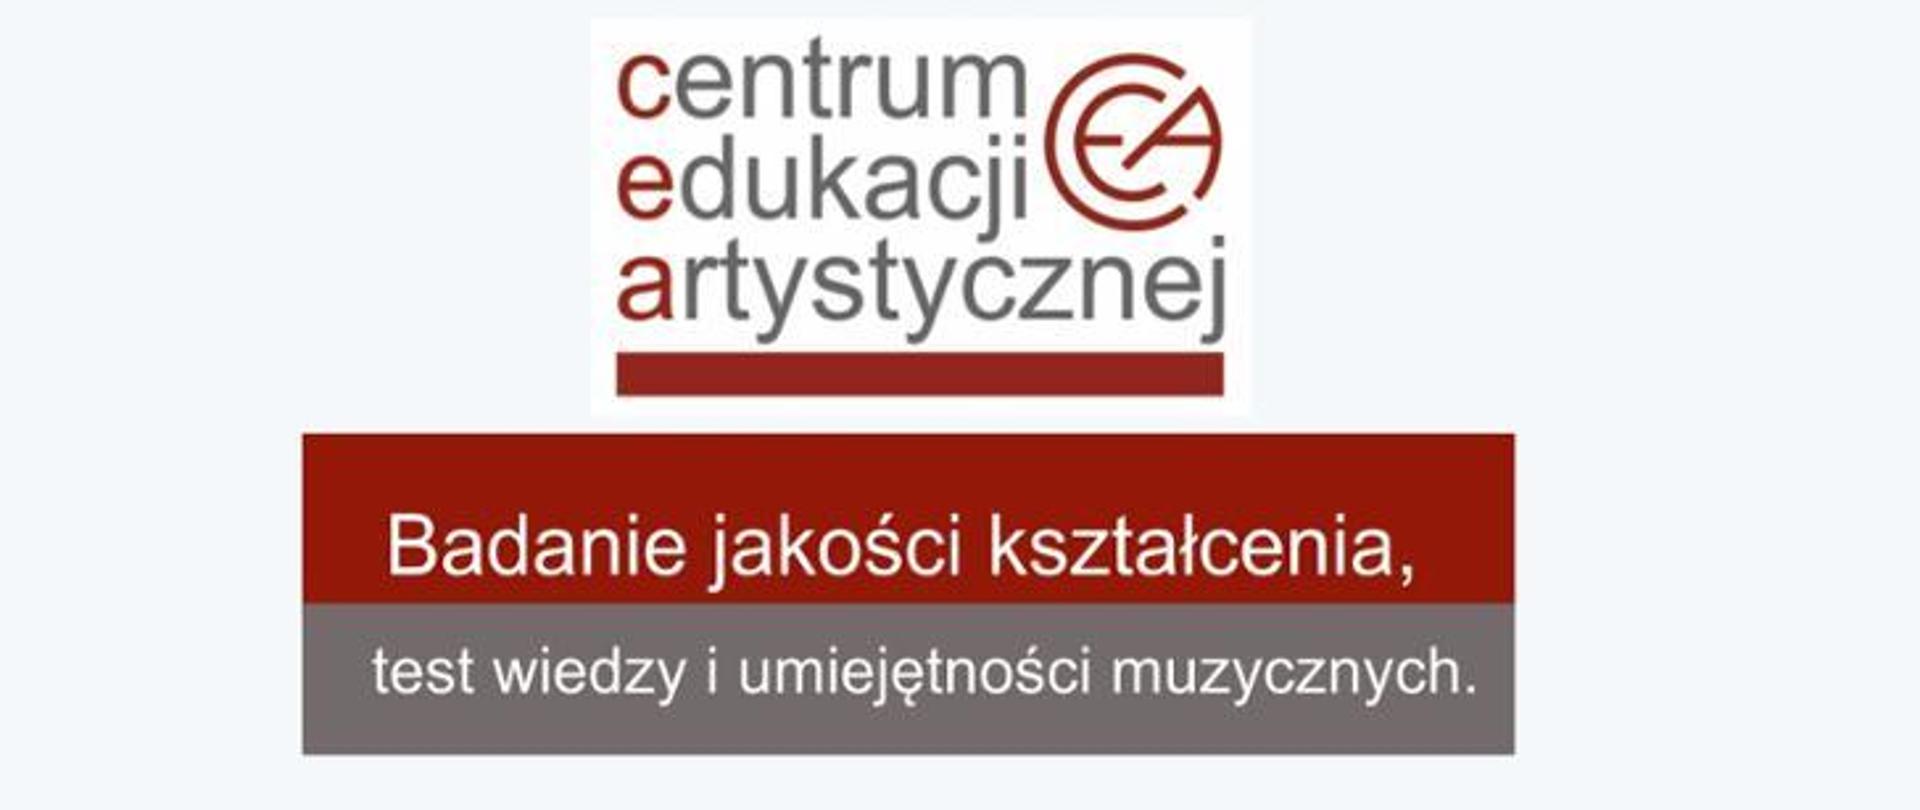 Baner z logo Centrum Edukacji Artystycznej, z napisem Badanie jakości kształcenia, test wiedzy i umiejętności muzycznych